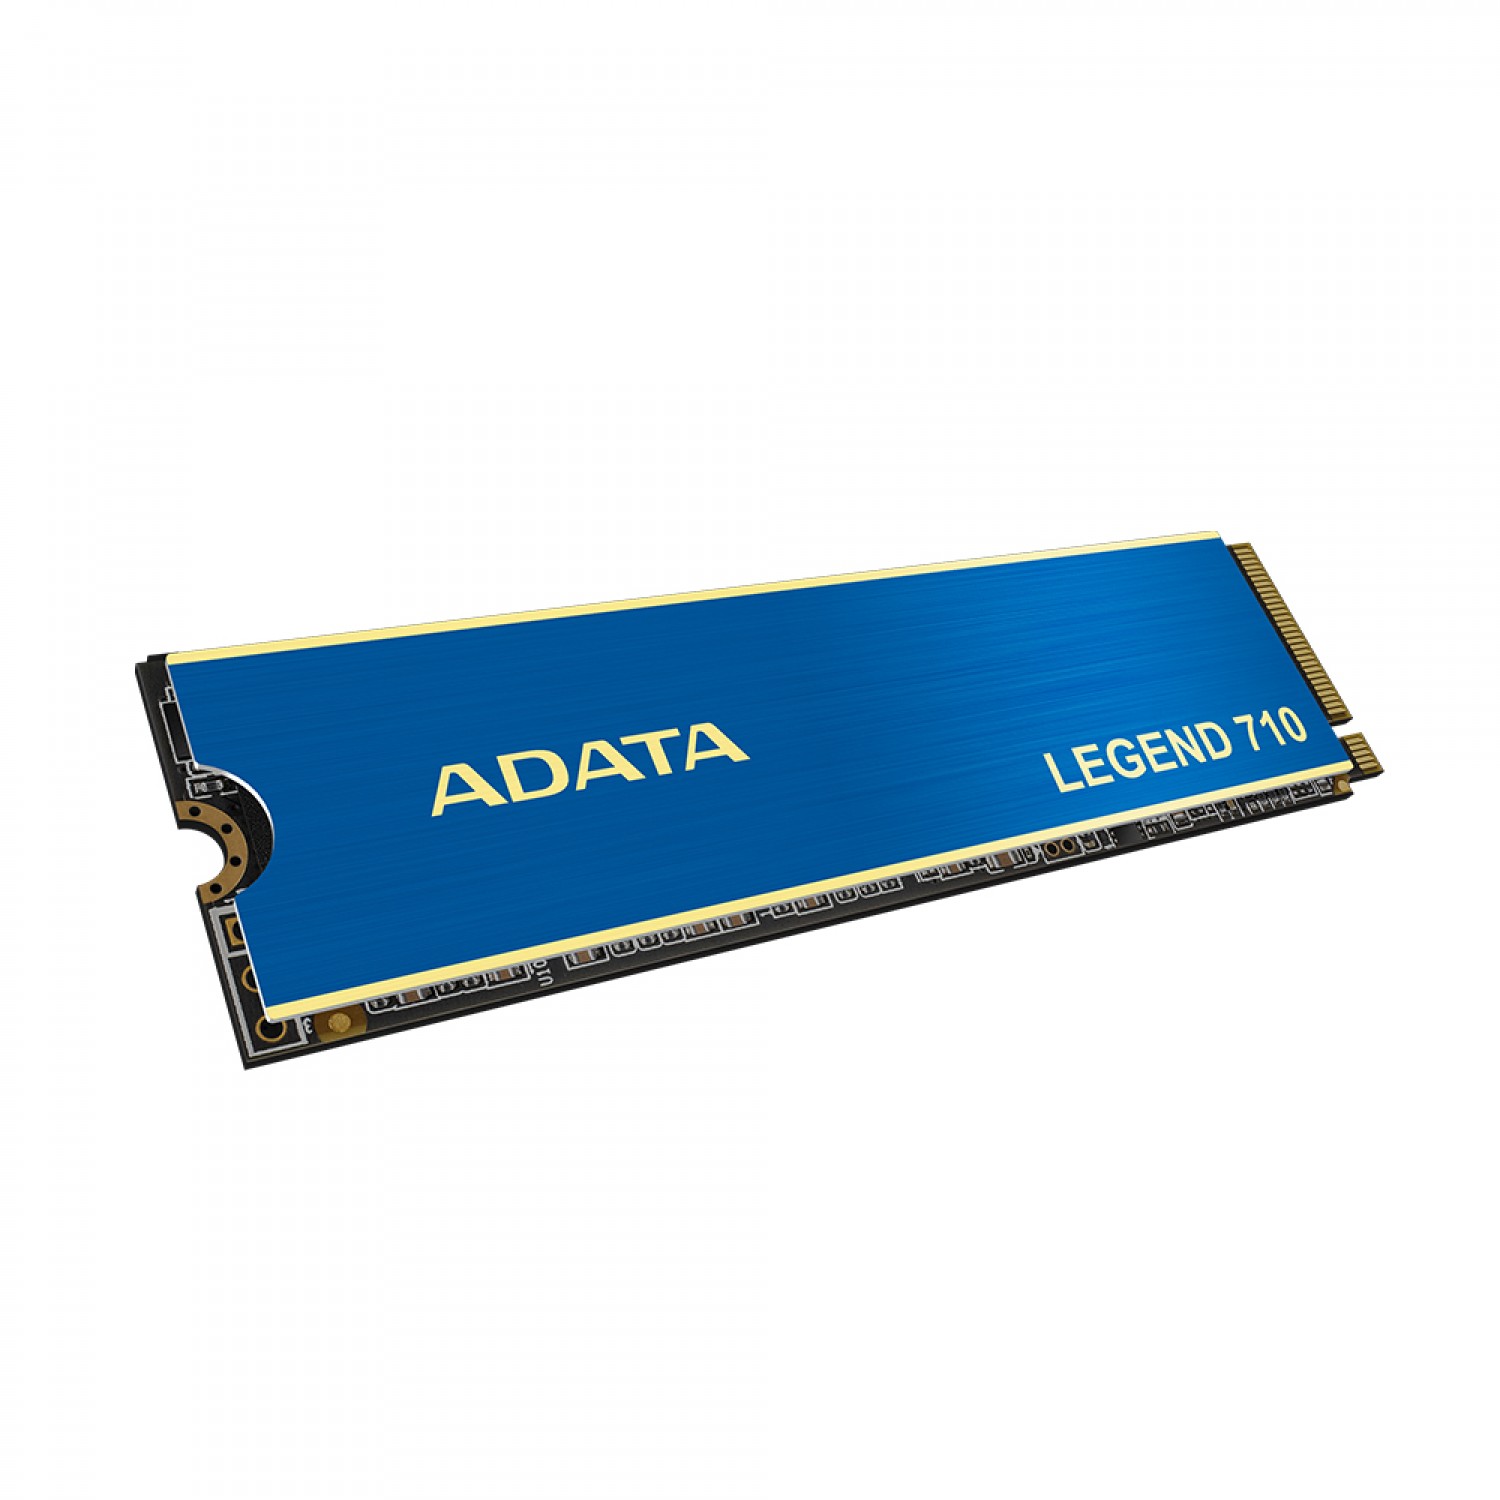 حافظه اس اس دی ADATA Legend 710 1TB-5